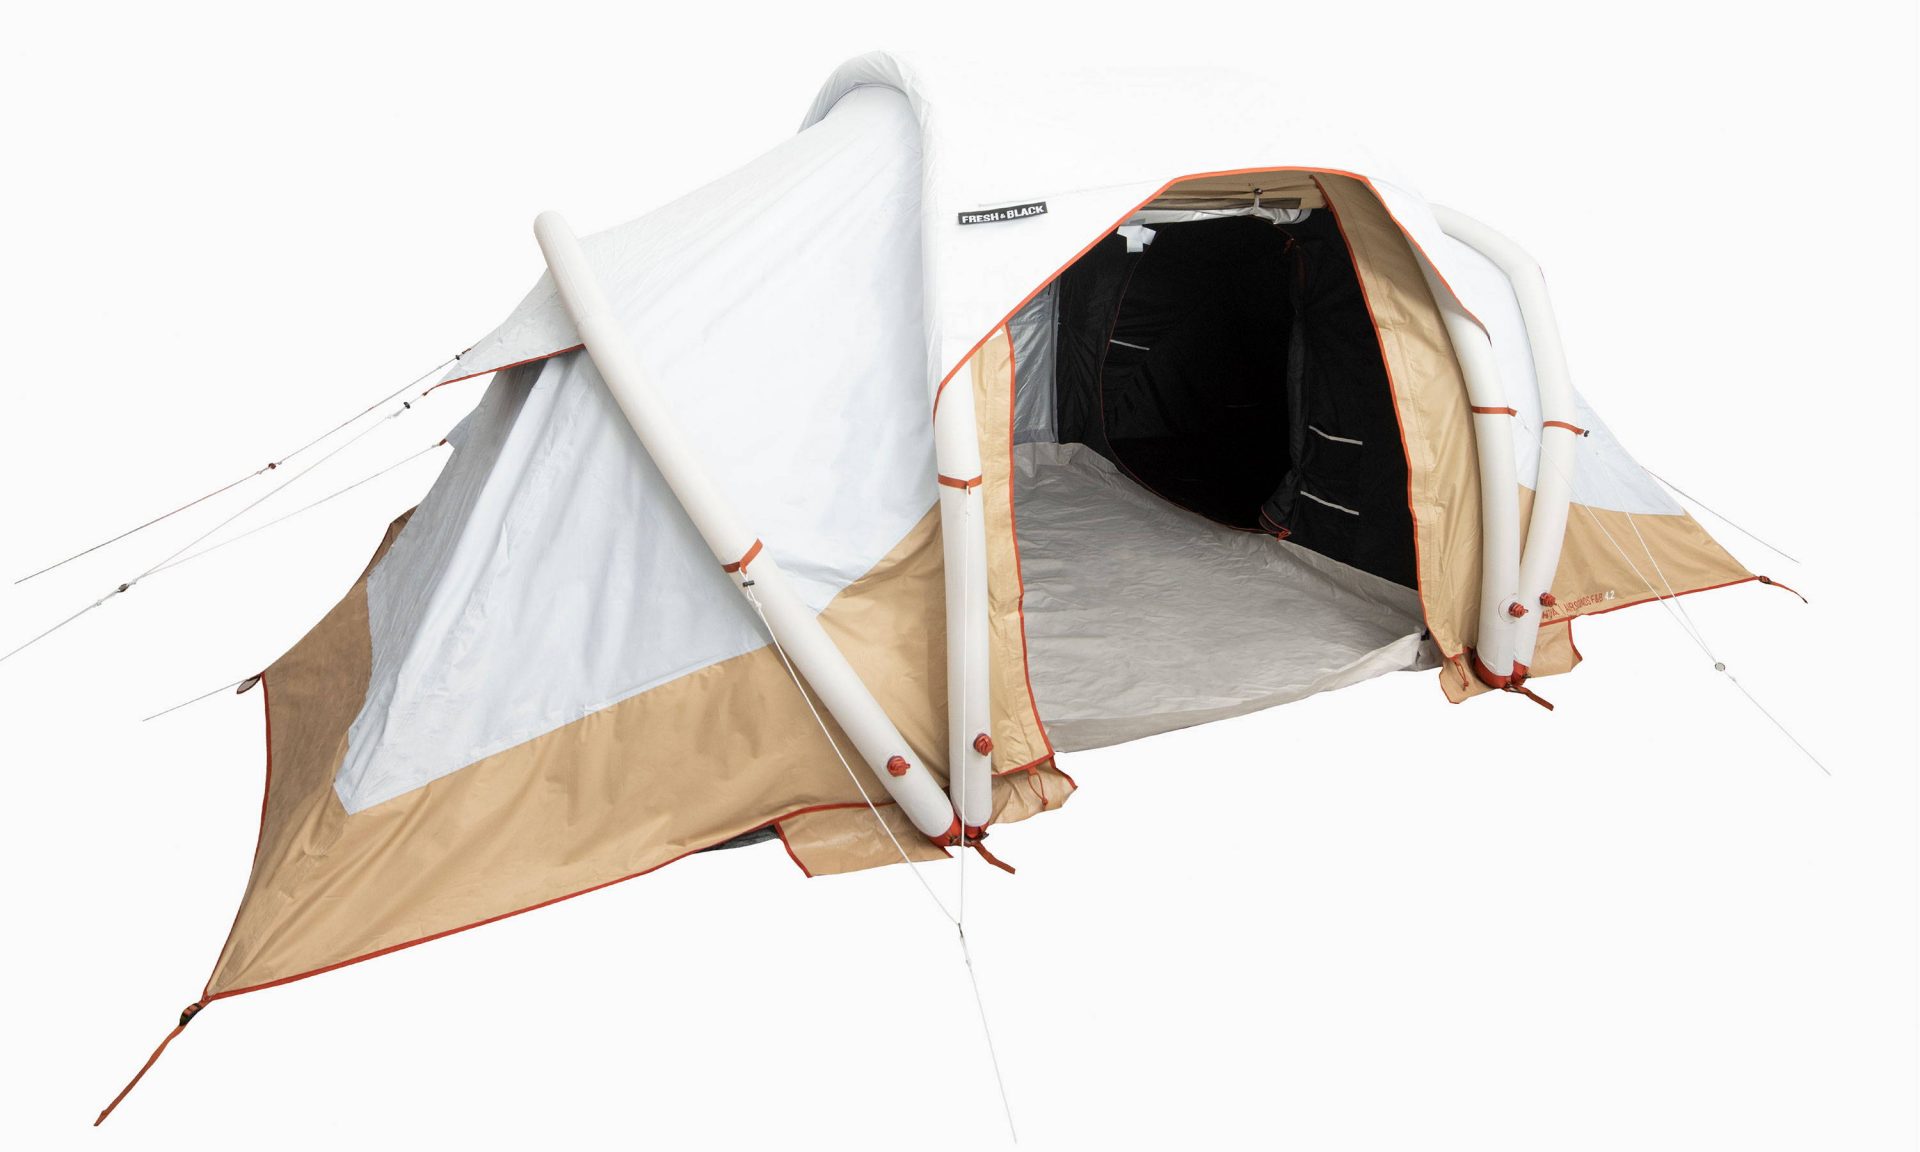 話題のデカトロン 21年の新商品テント タープなど14商品 キャンプレビュー